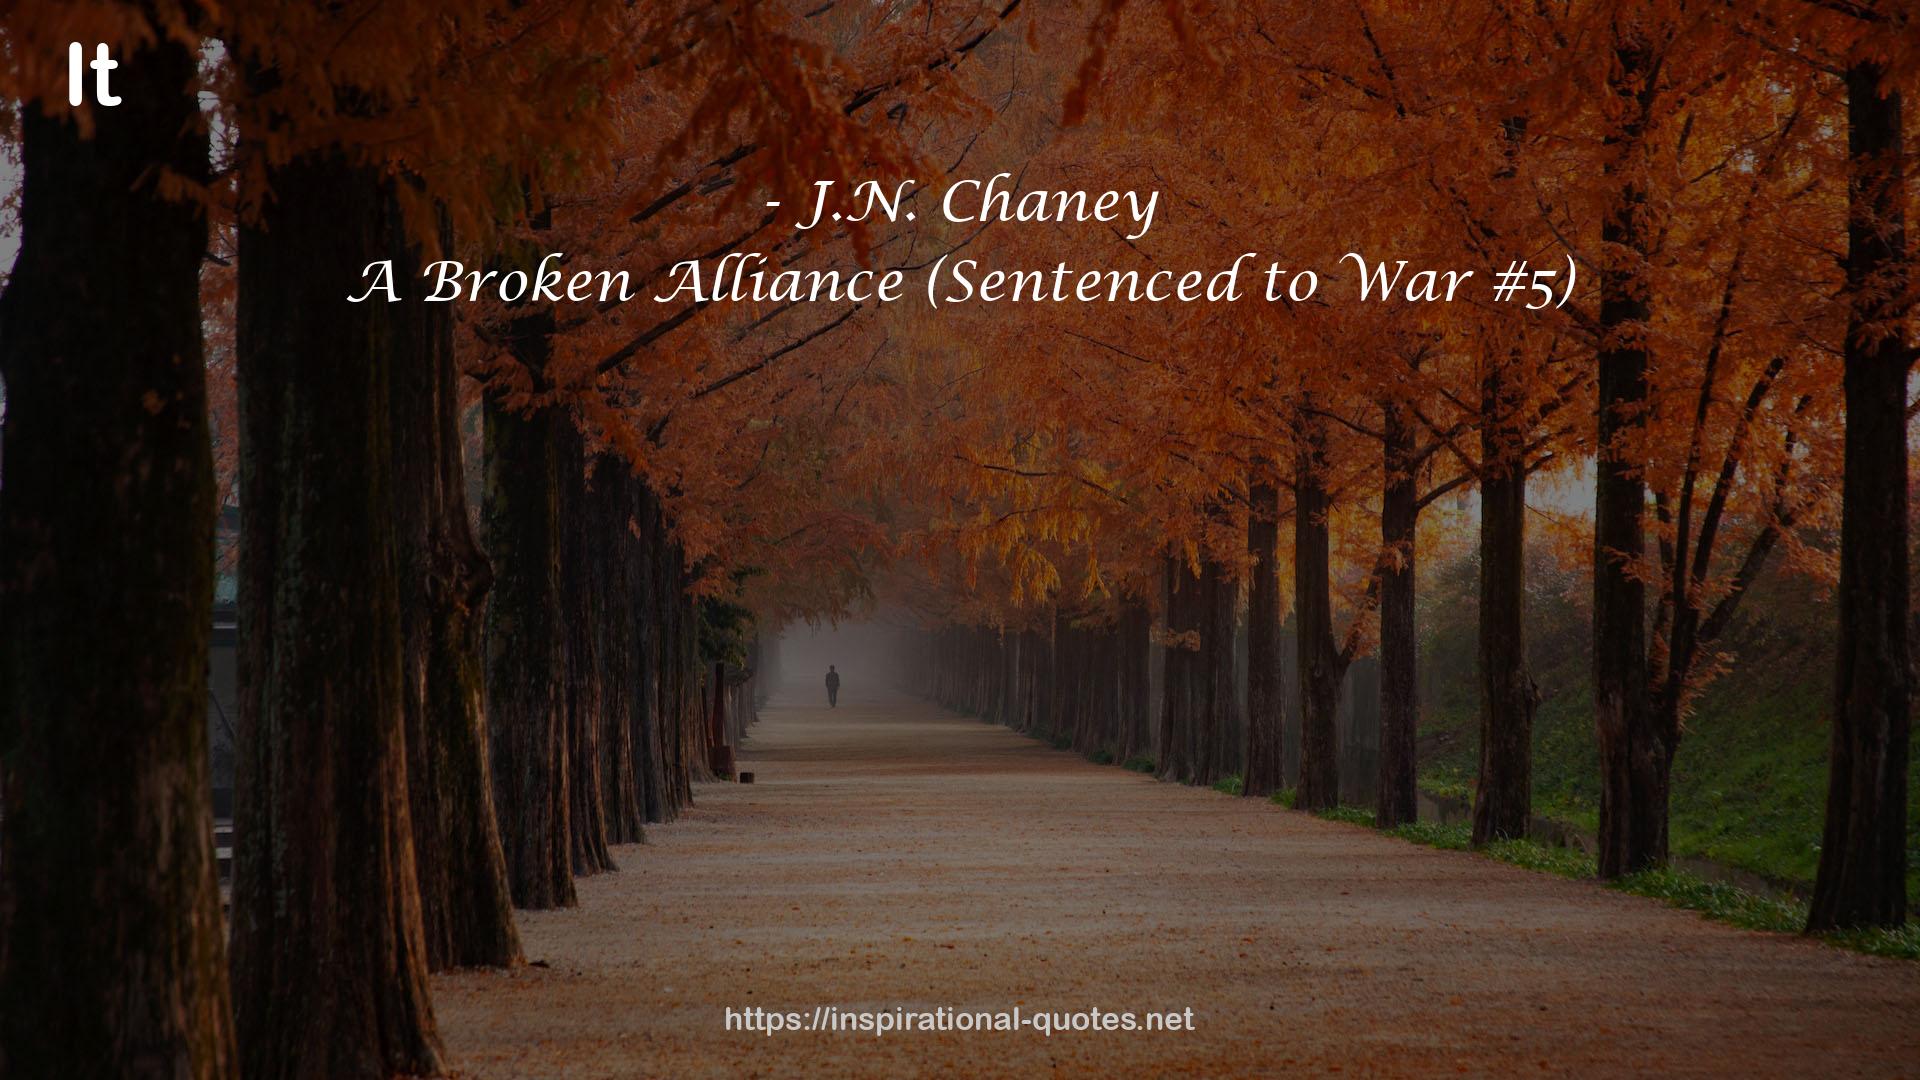 A Broken Alliance (Sentenced to War #5) QUOTES